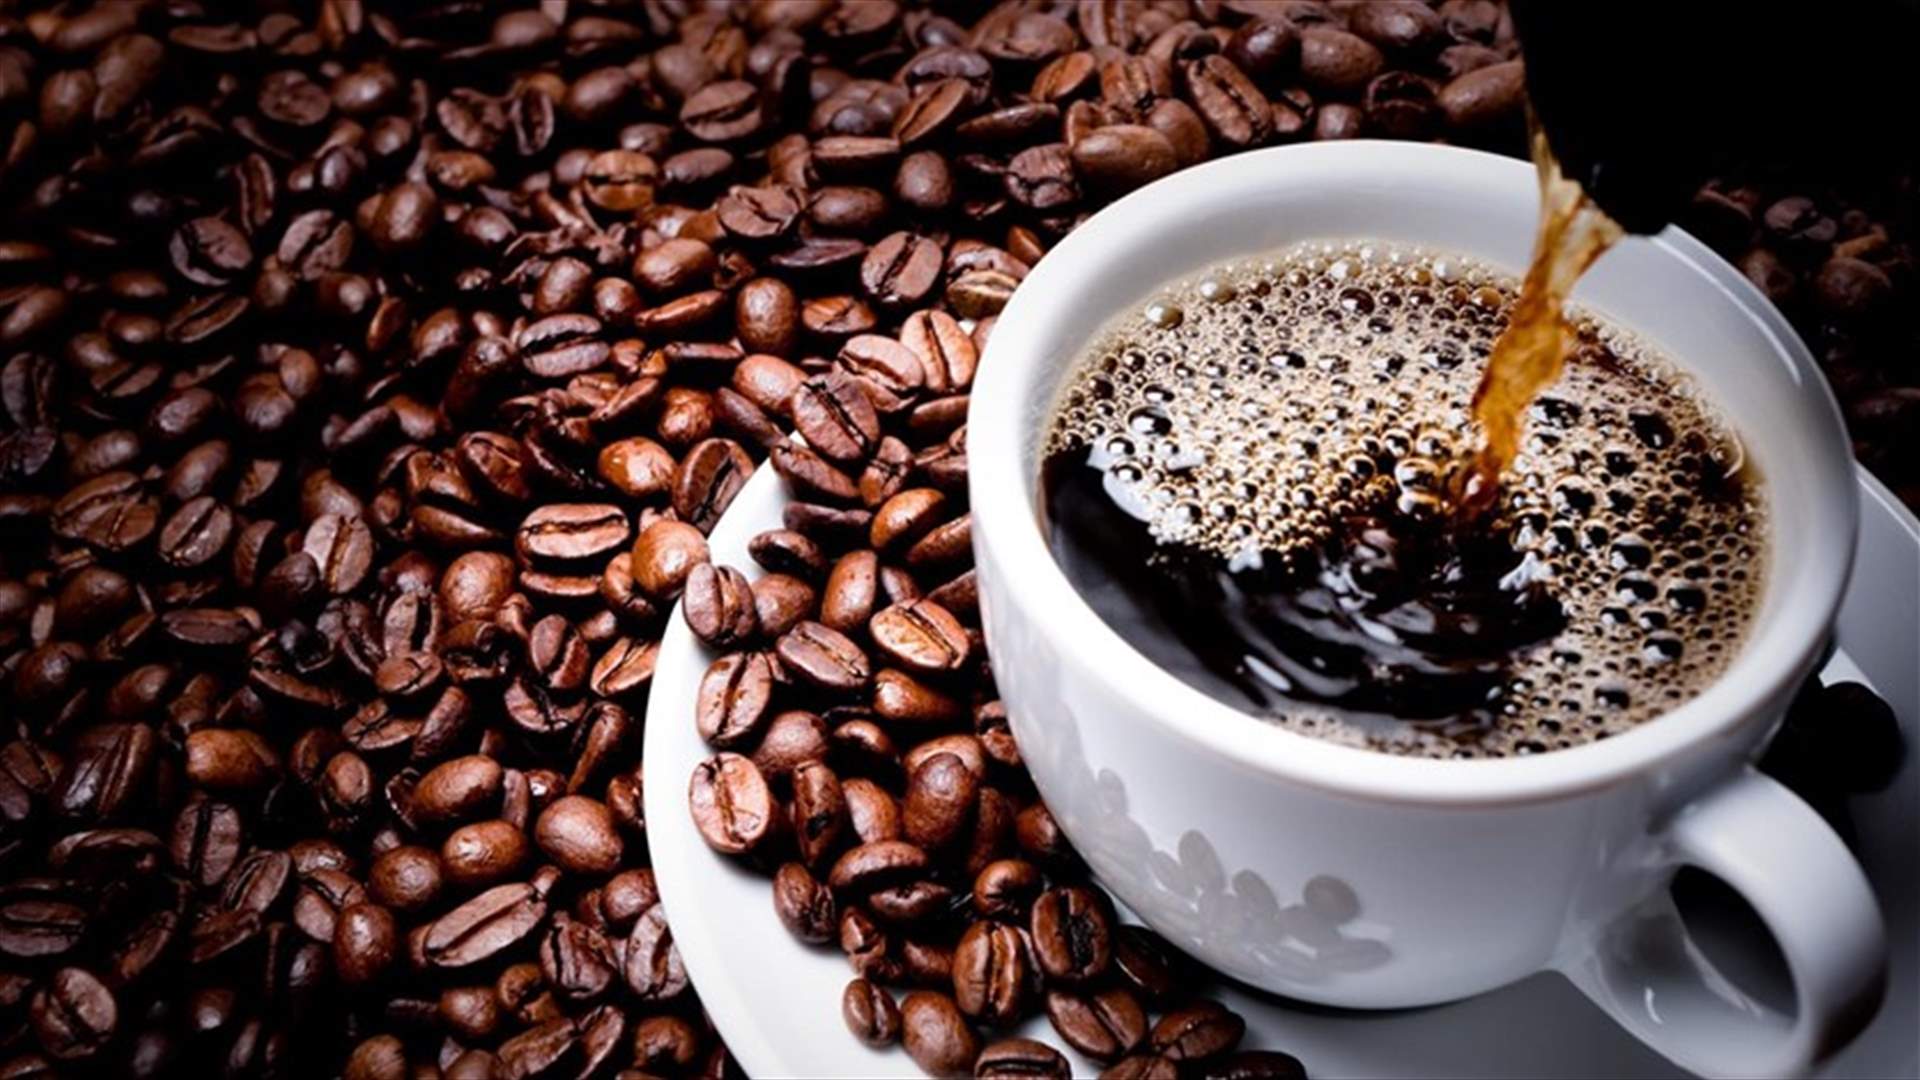 استهلاك القهوة قد يساعد على تقليل خطر الإصابة بالأمراض التنكسية العصبية